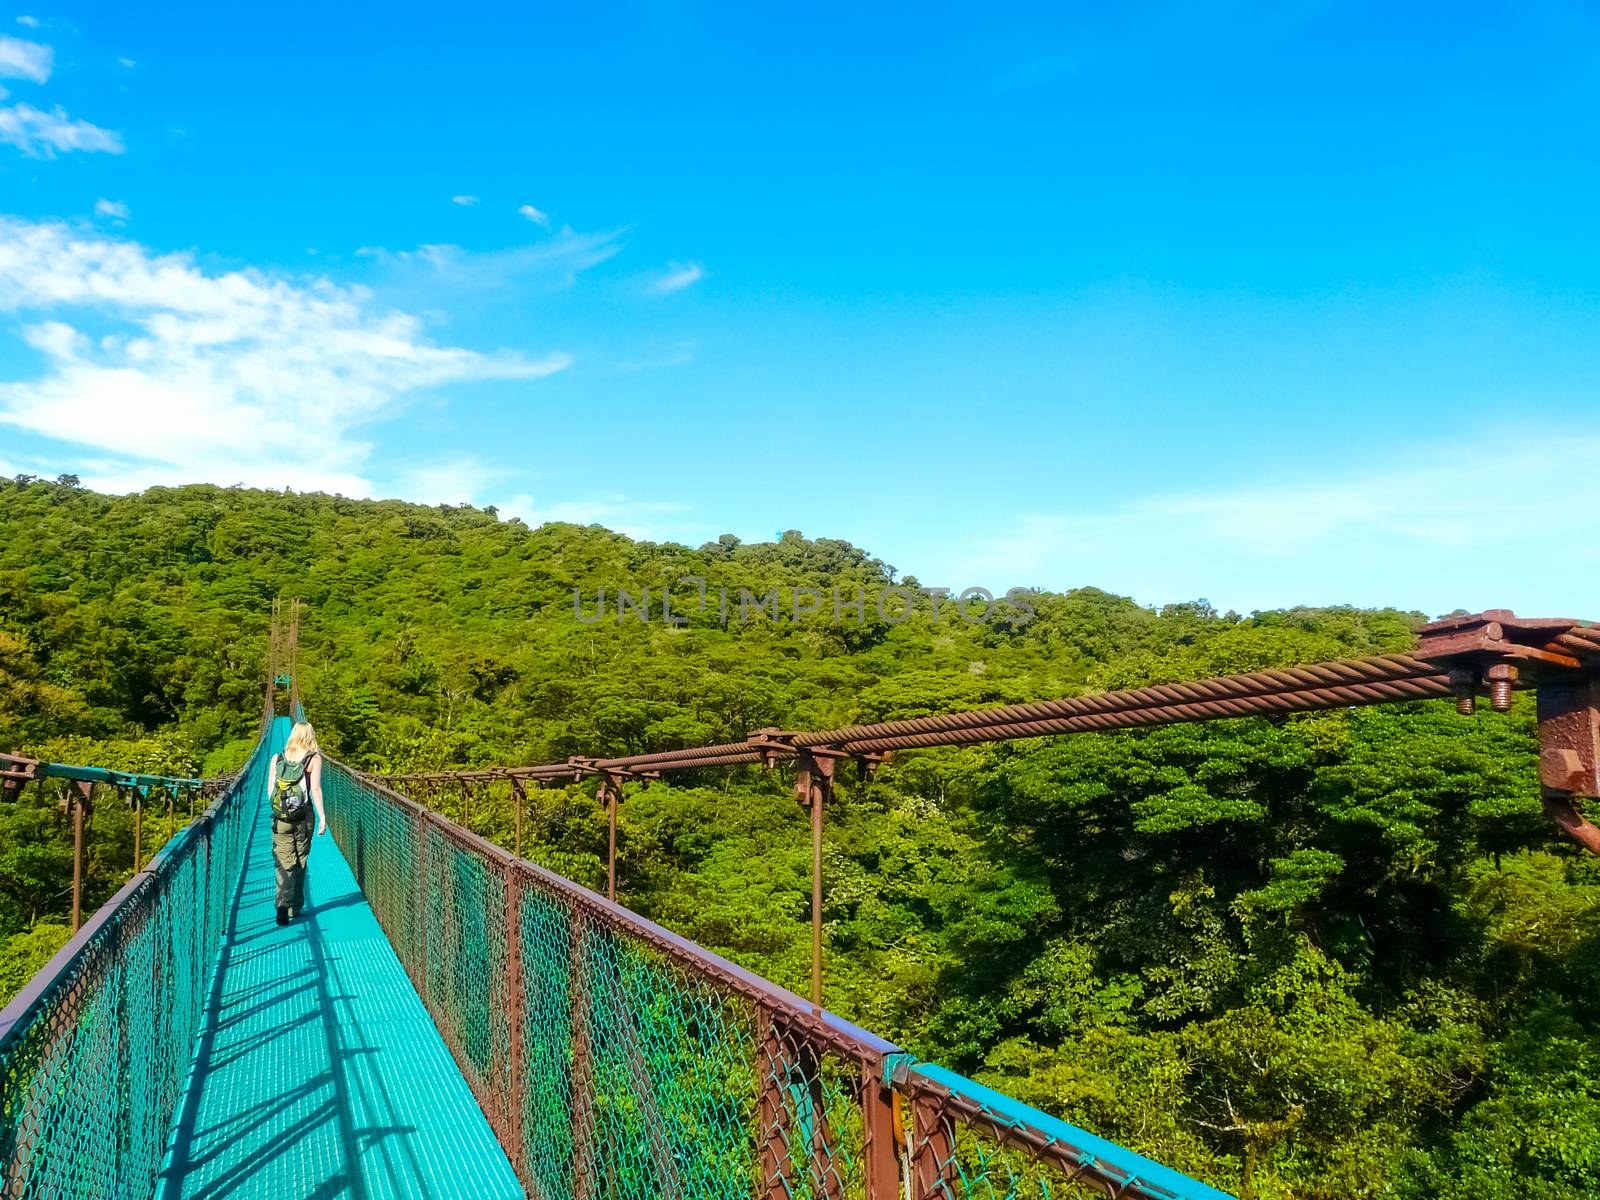 Monteverde national park by nicousnake